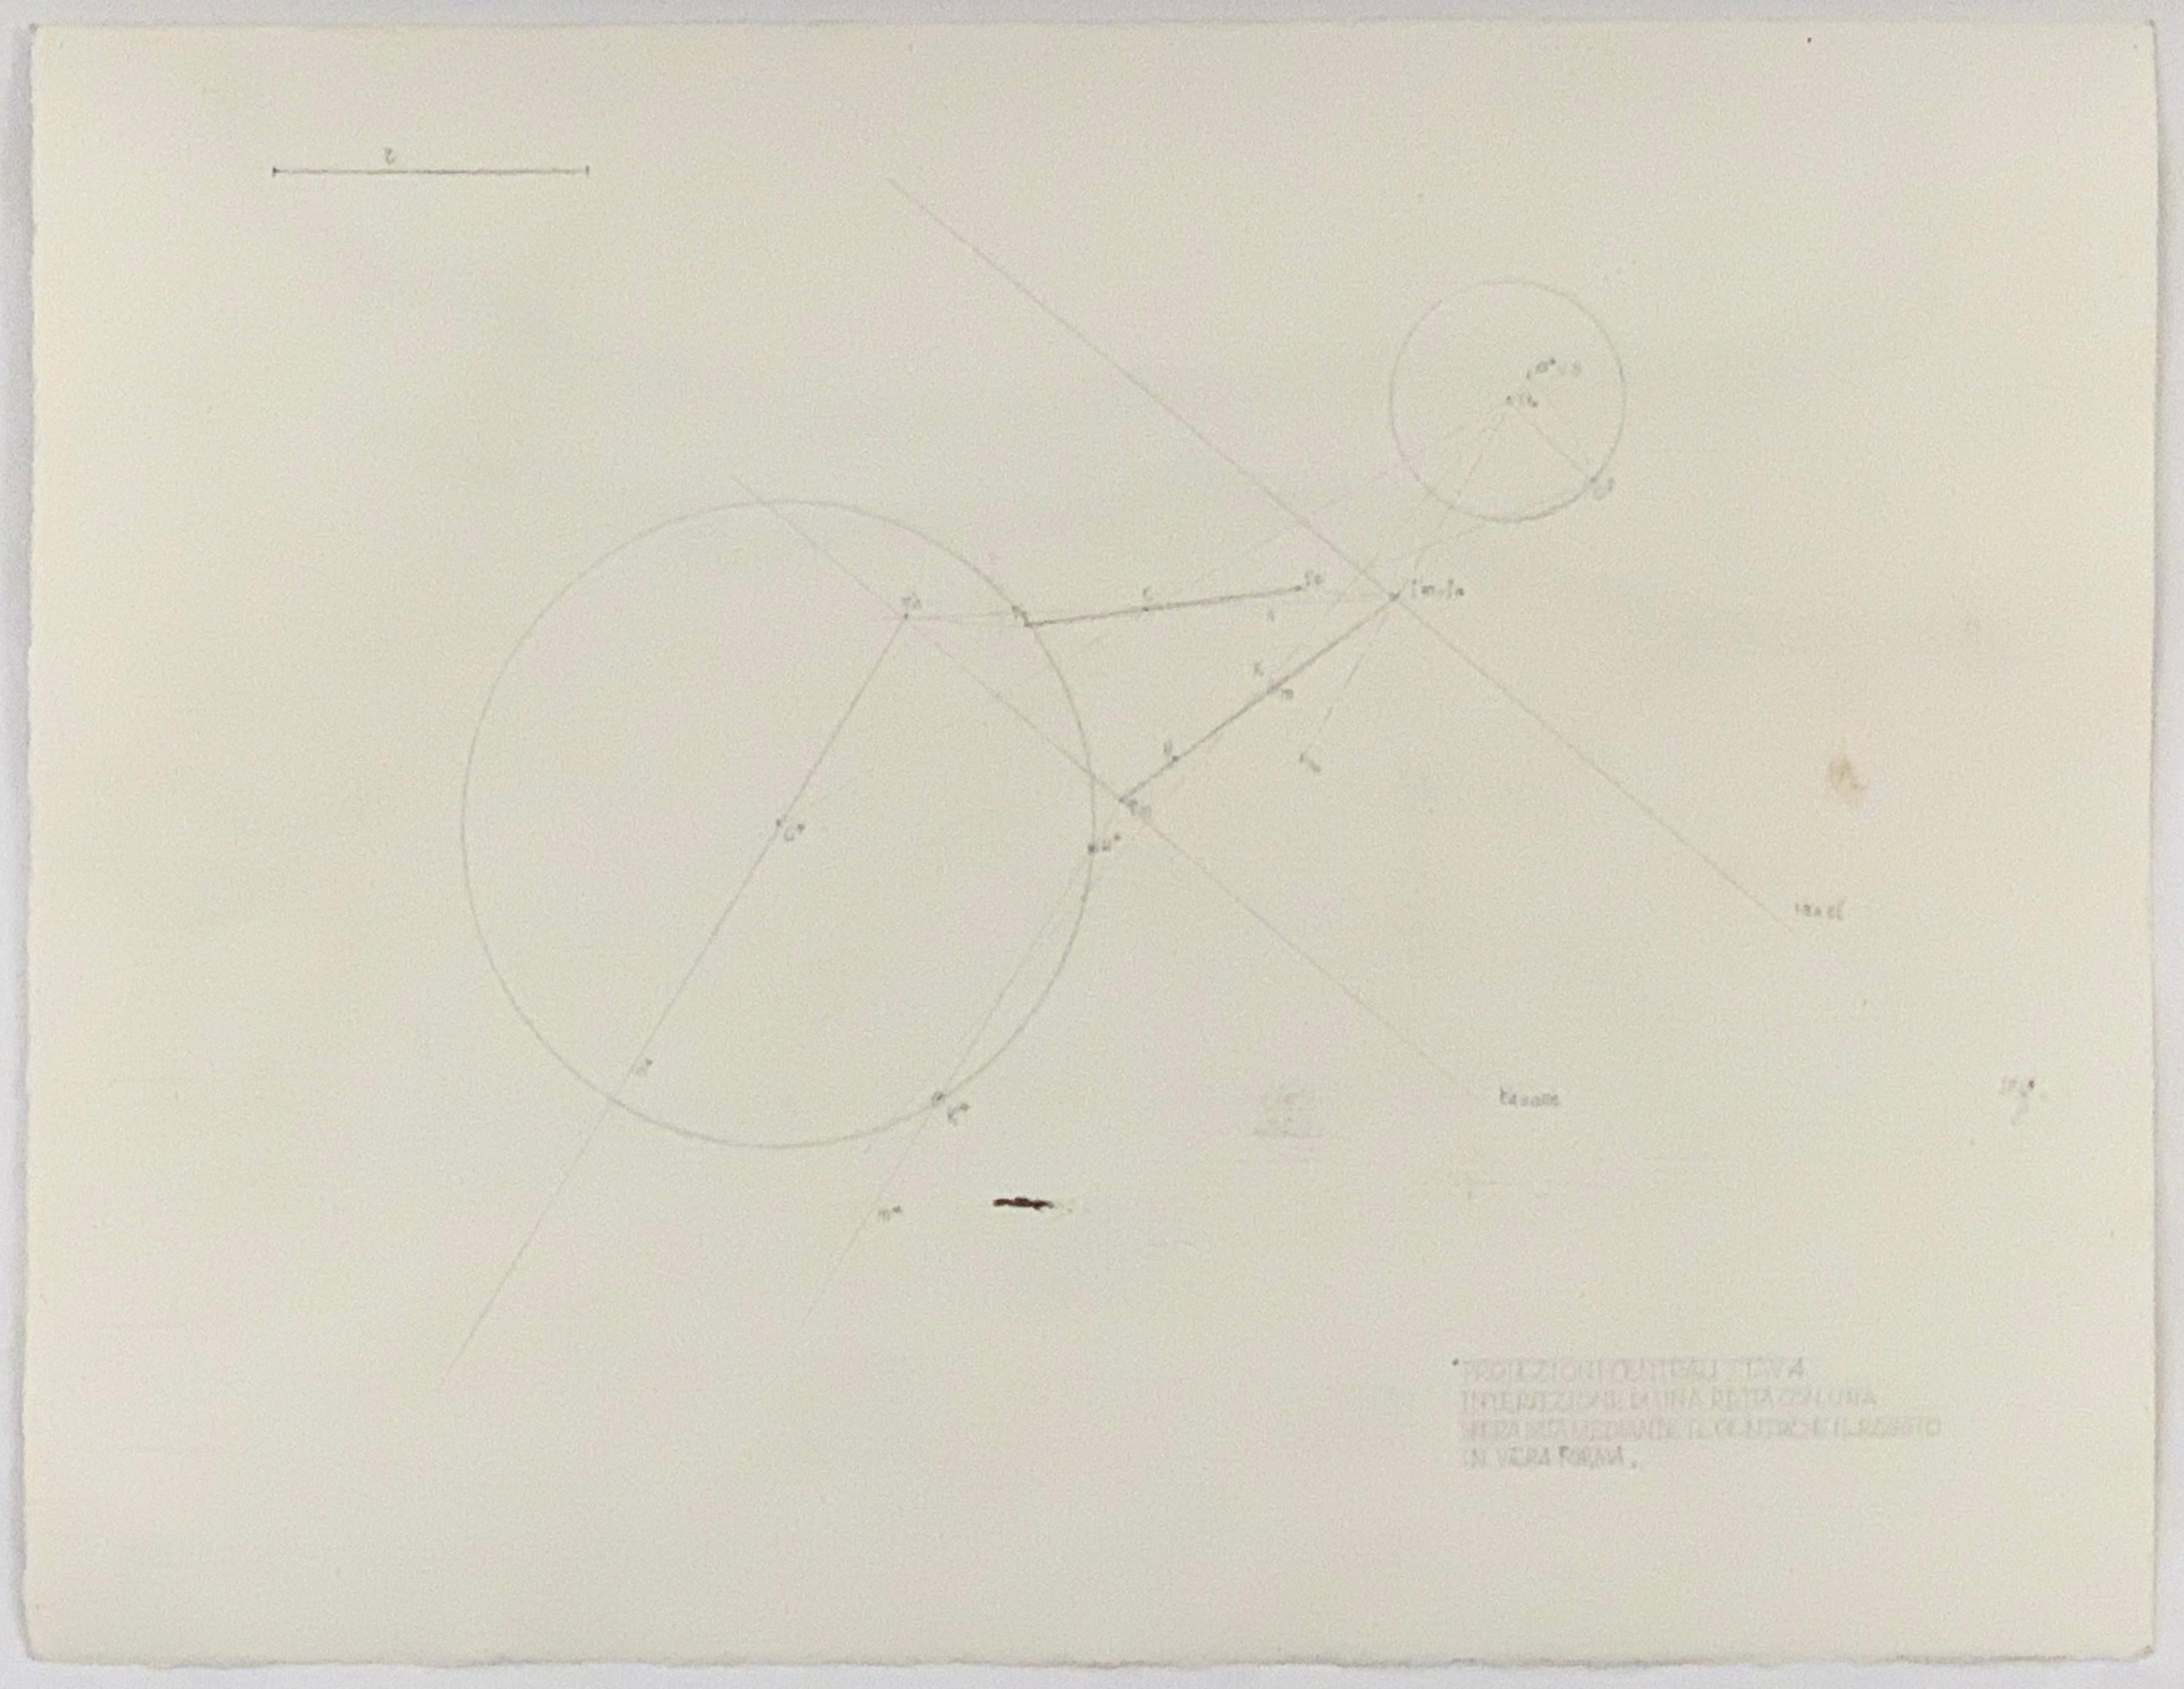 Sans titre, 1950
Encre sur papier
10 1/4 x 13 3/8 in. (26 x 34 cm)
Unique en son genre
Signé et daté